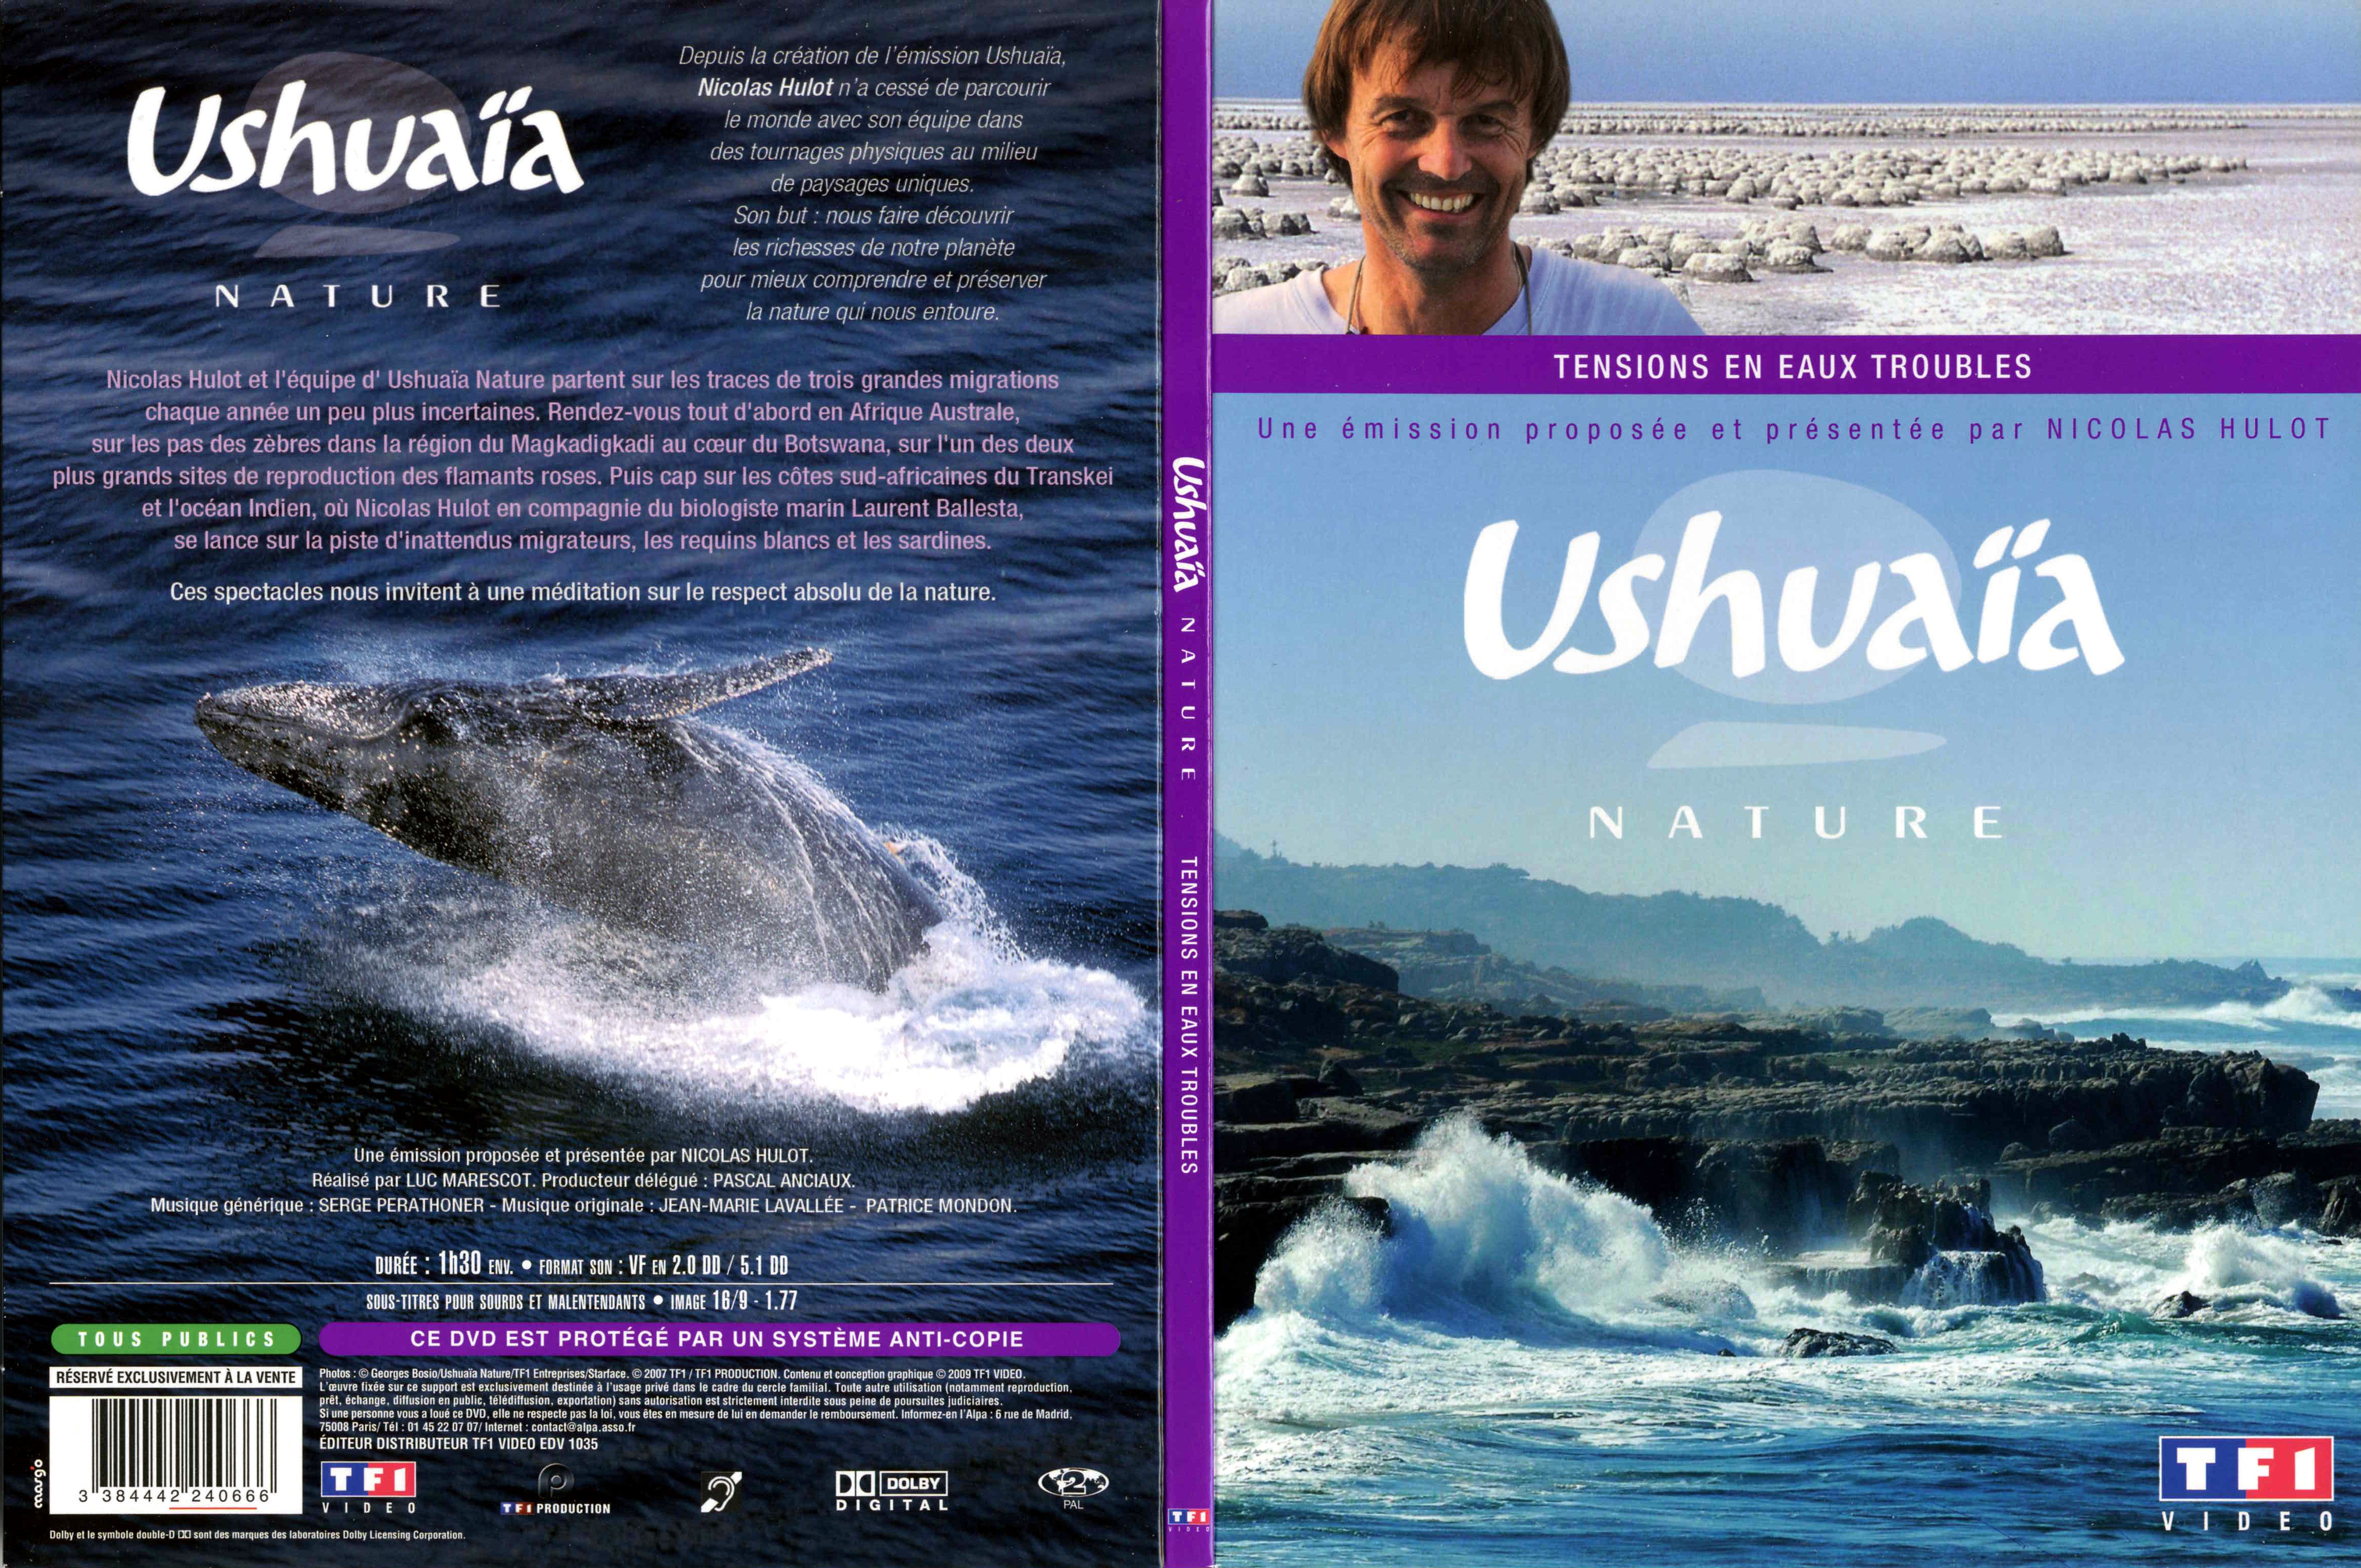 Jaquette DVD Ushuaia Nature - Tensions en eaux troubles